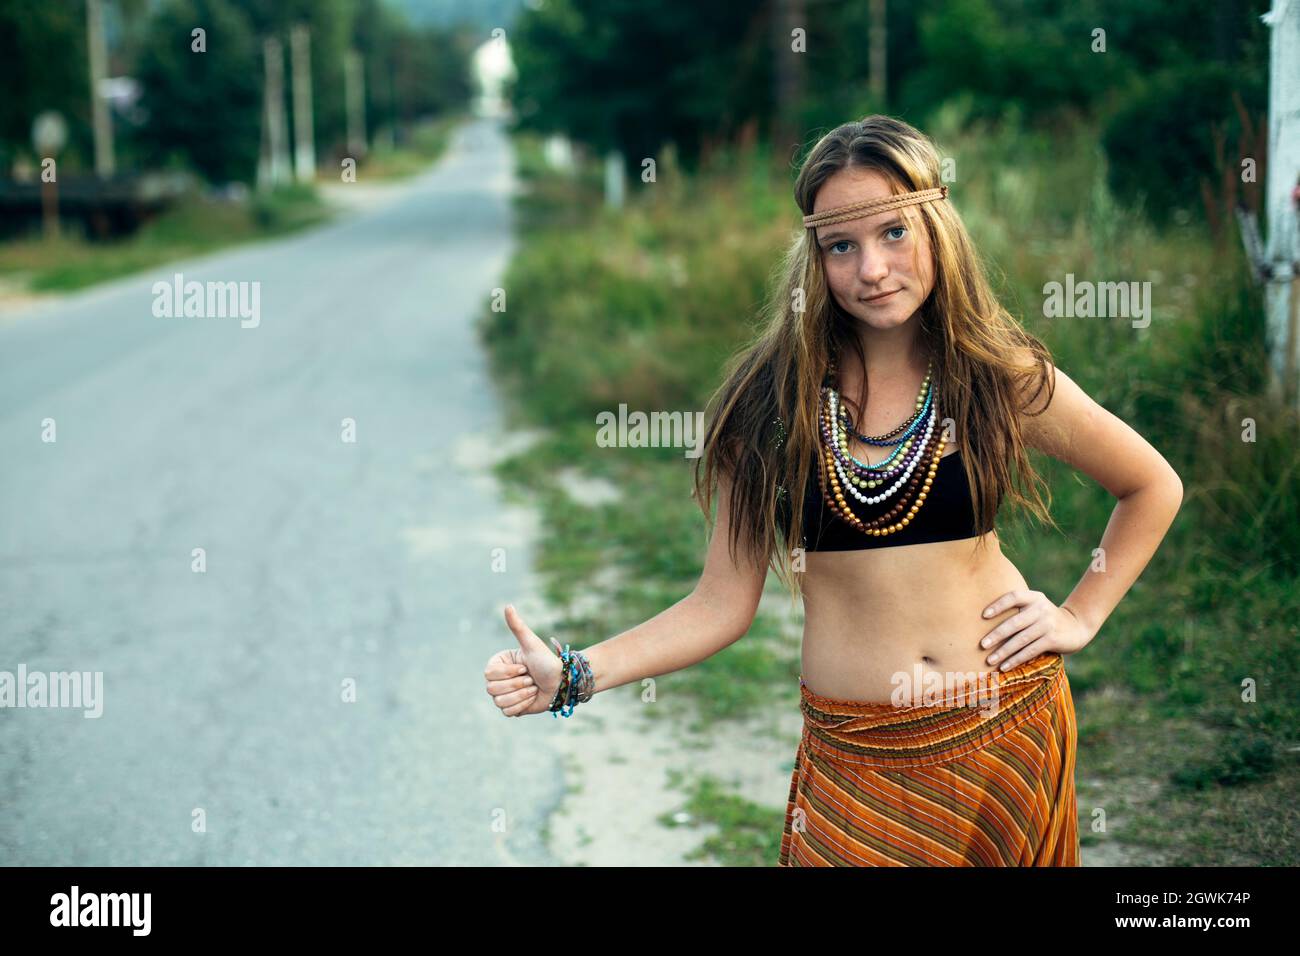 Ein Hippie-Mädchen steht bei der Abstimmung in der Nähe der Straße. Anhalter für Wanderungen. Stockfoto